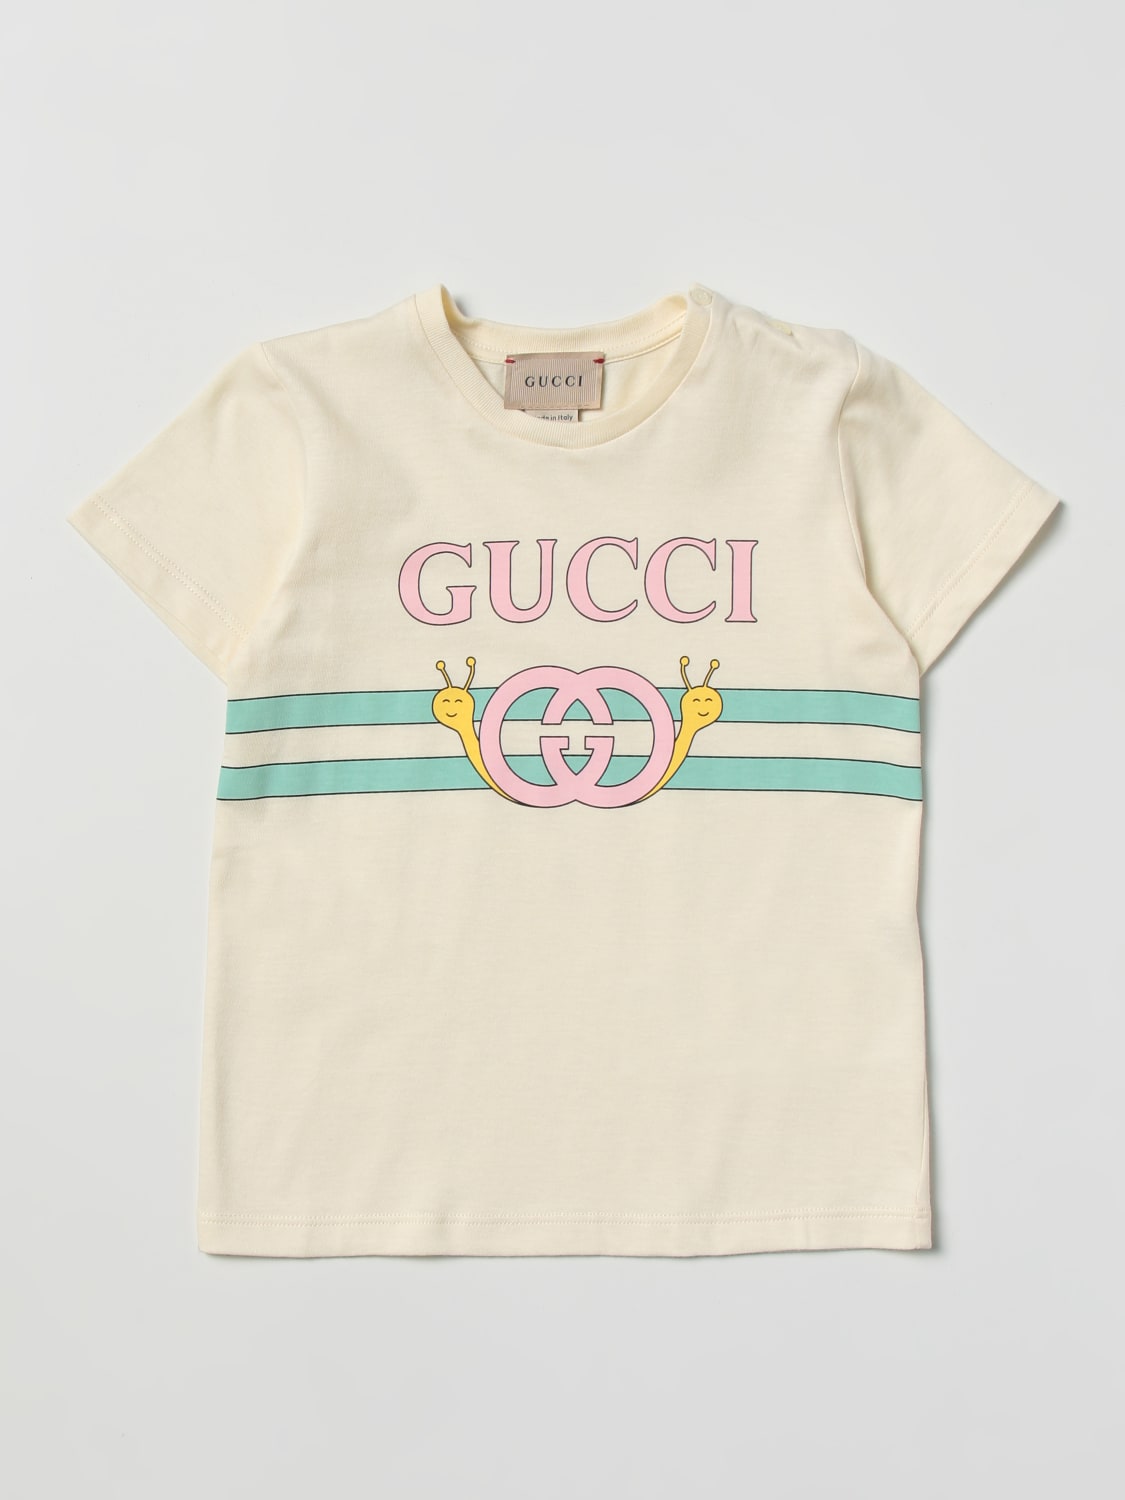 GUCCI: Camiseta para bebé, Nata | Camiseta Gucci 555675XJE33 en línea en